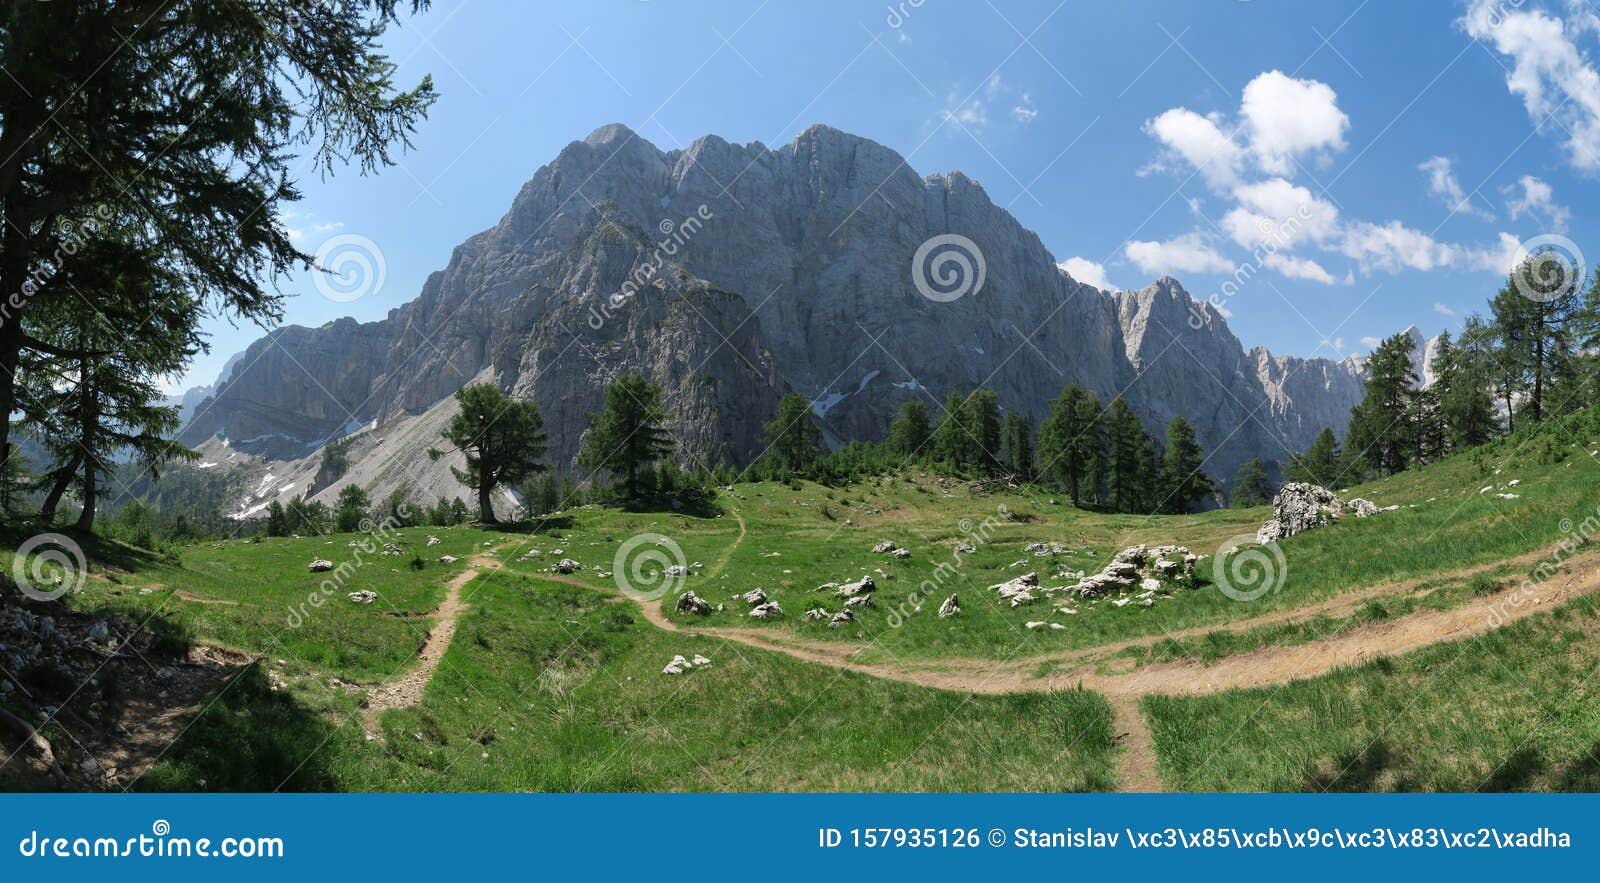 mojstrovka peak from slemenova peak in julian alps